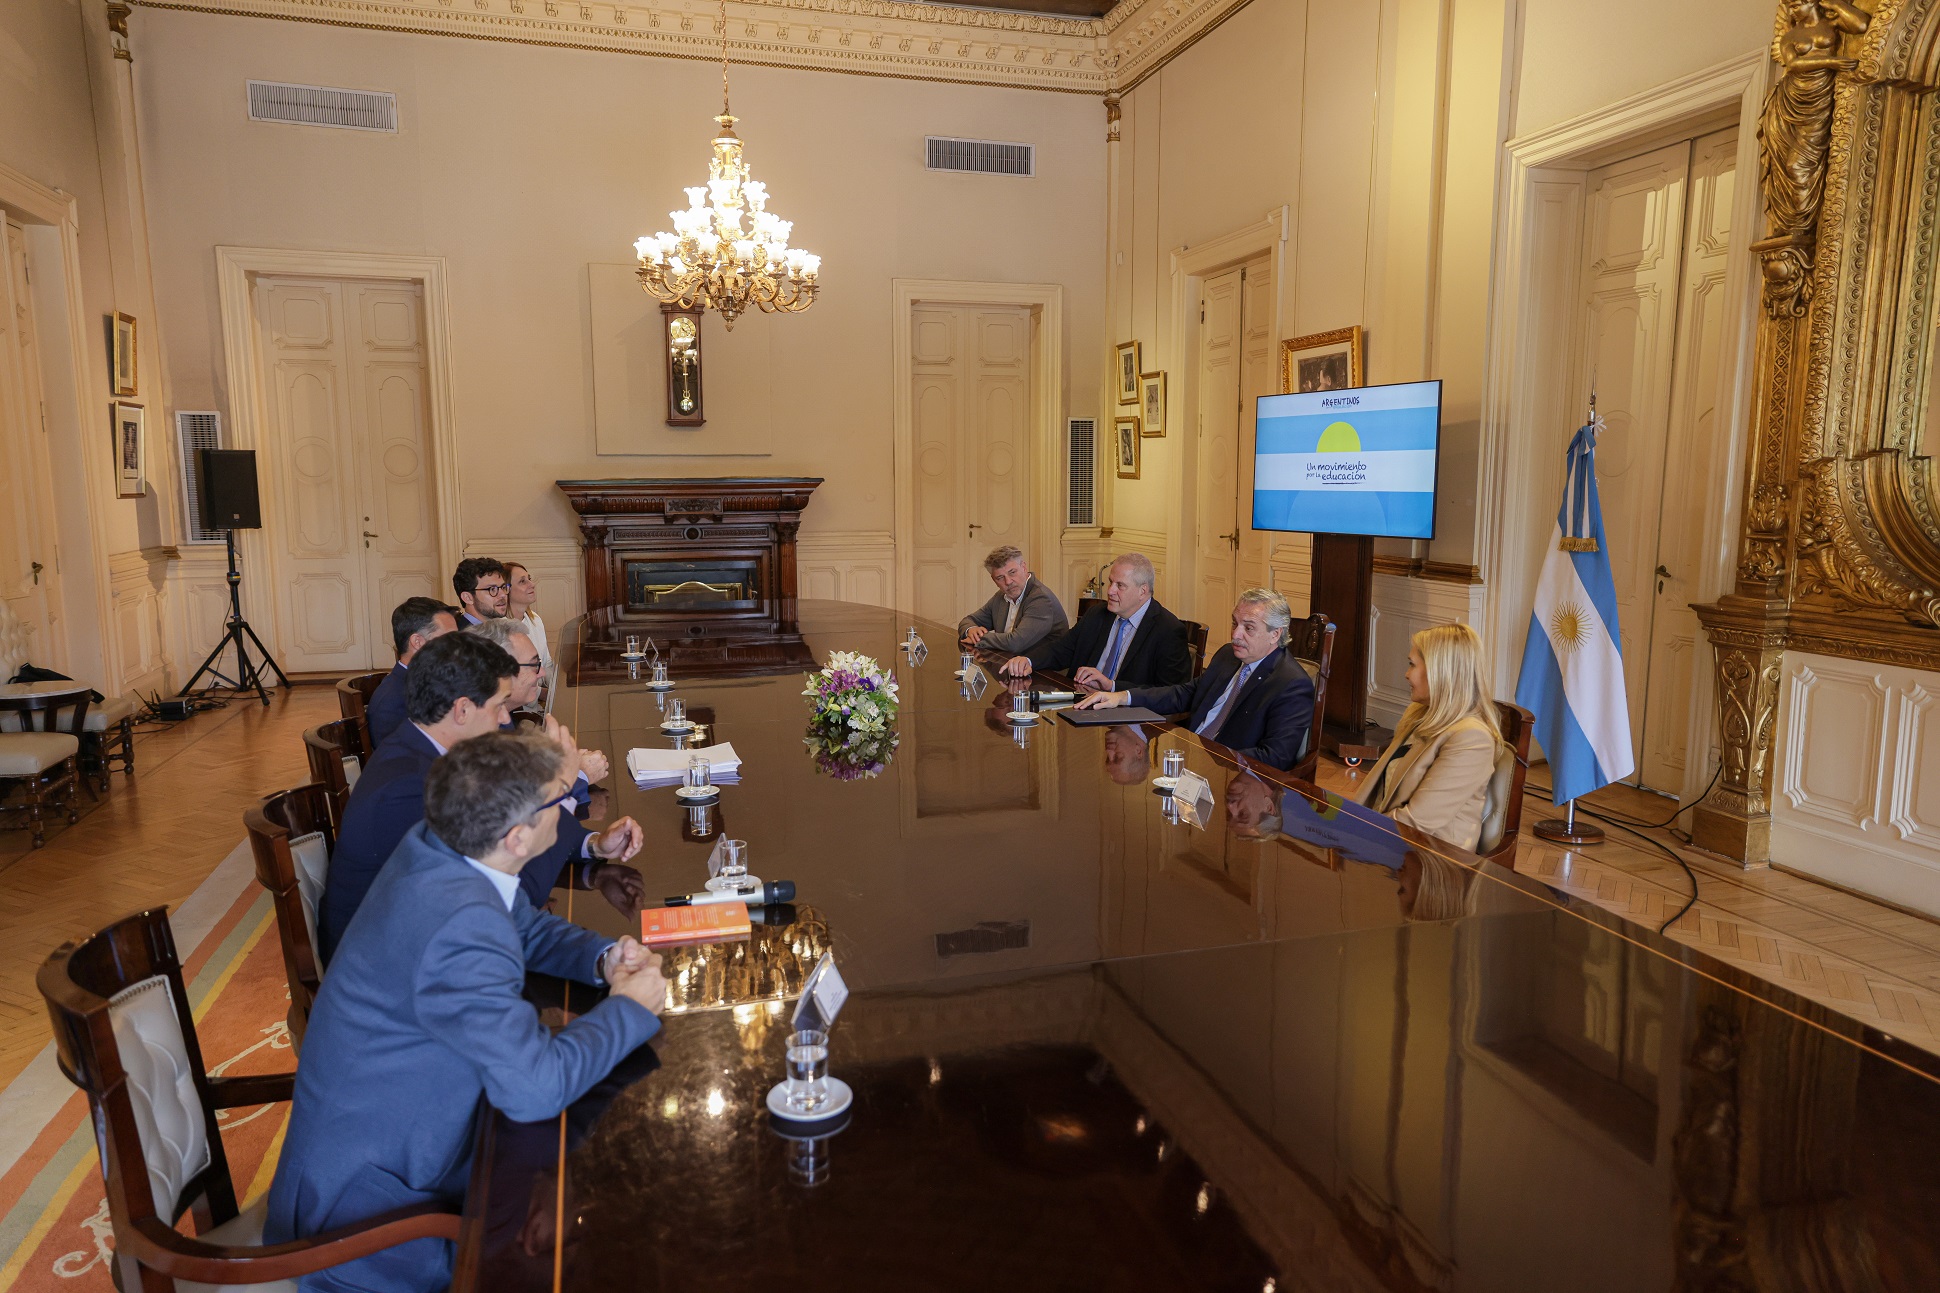 El presidente recibió a miembros de la organización Argentinos por la Educación